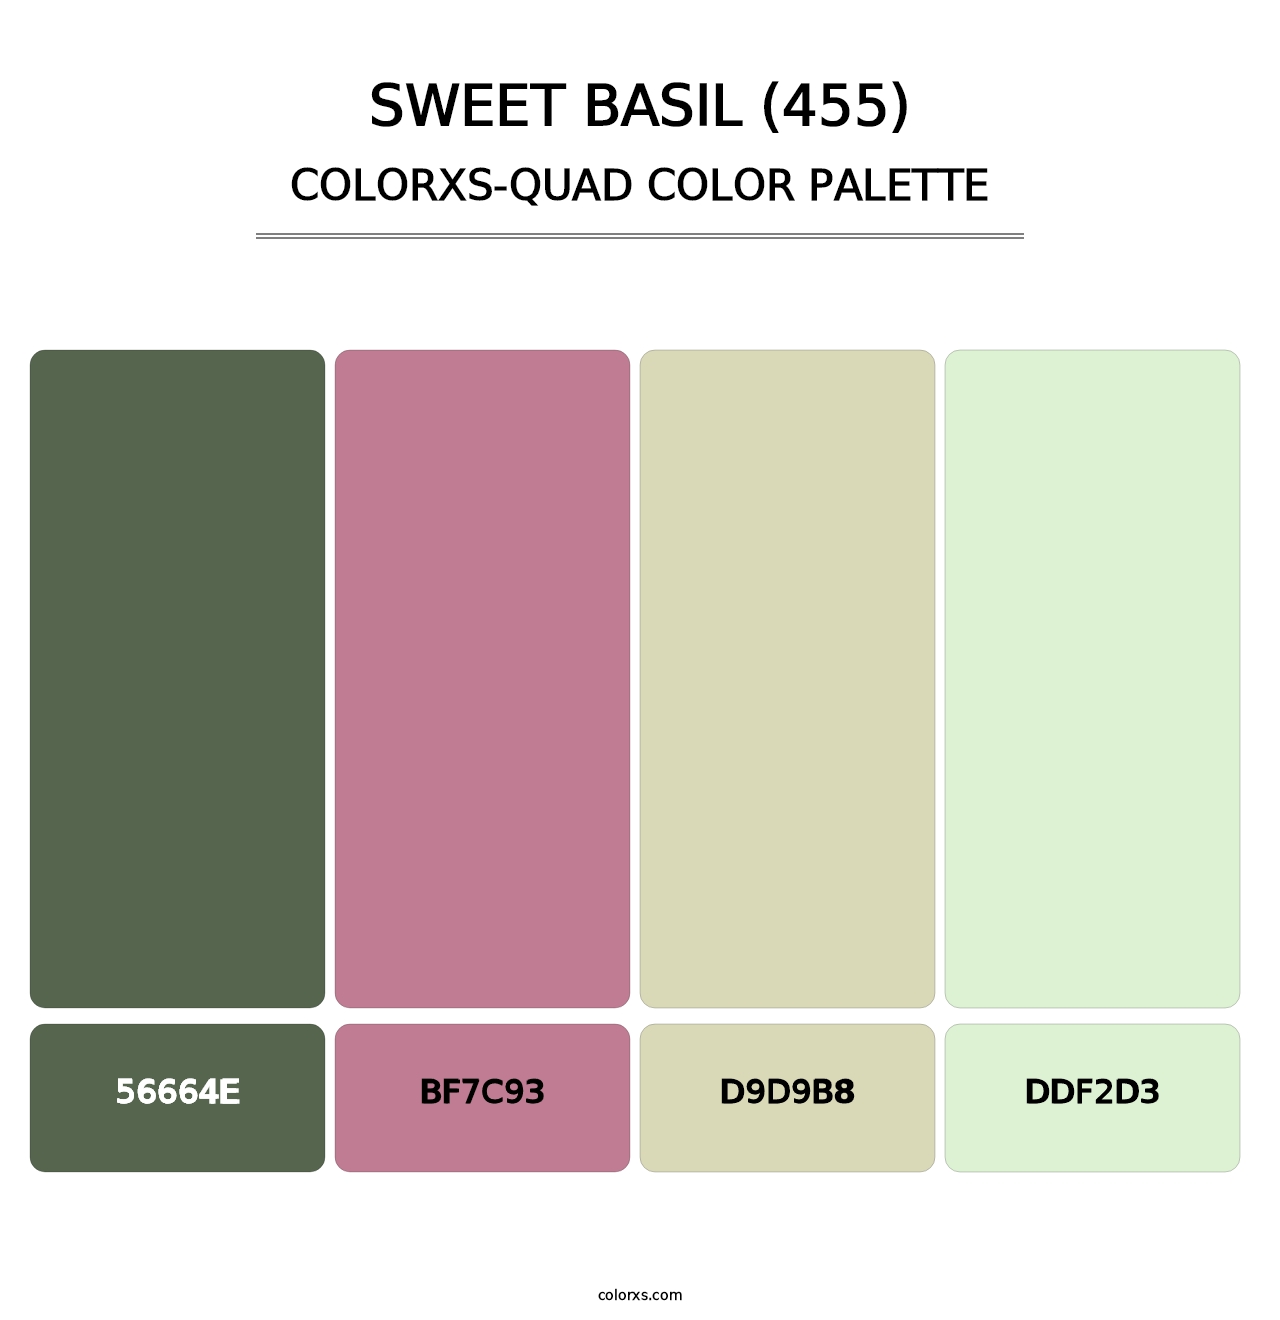 Sweet Basil (455) - Colorxs Quad Palette